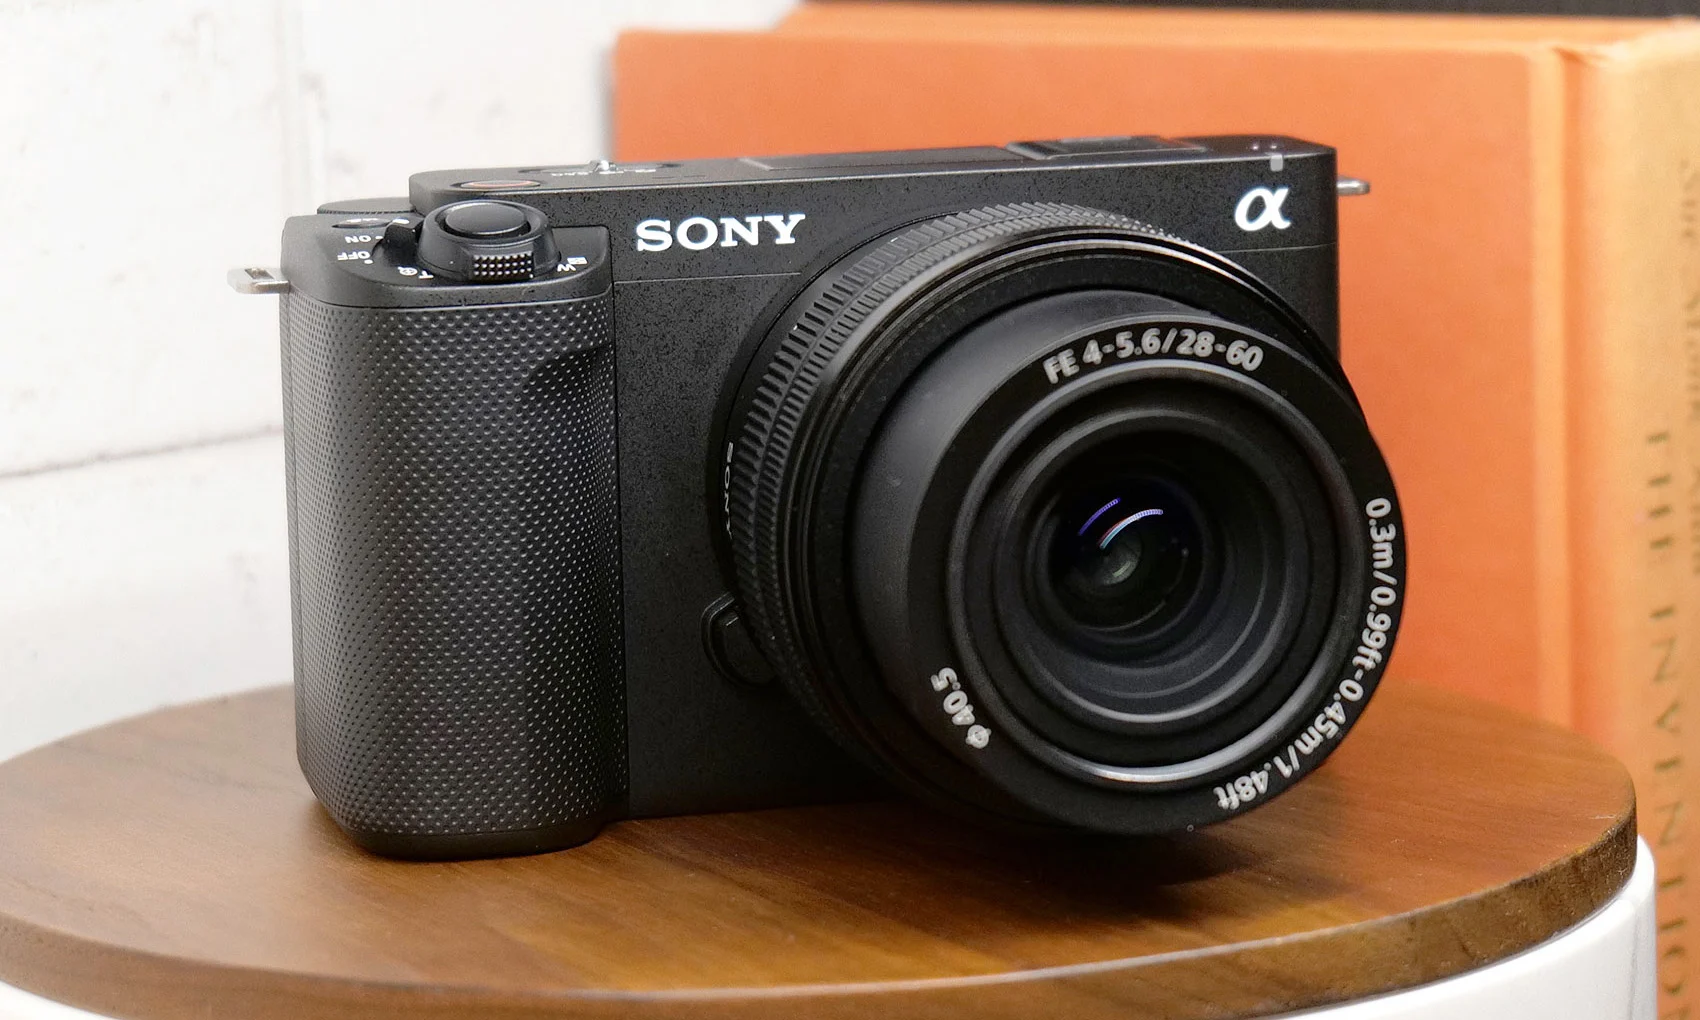 Sony's 12-megapixel full-frame ZV-E1 is a low-light vlogging beast